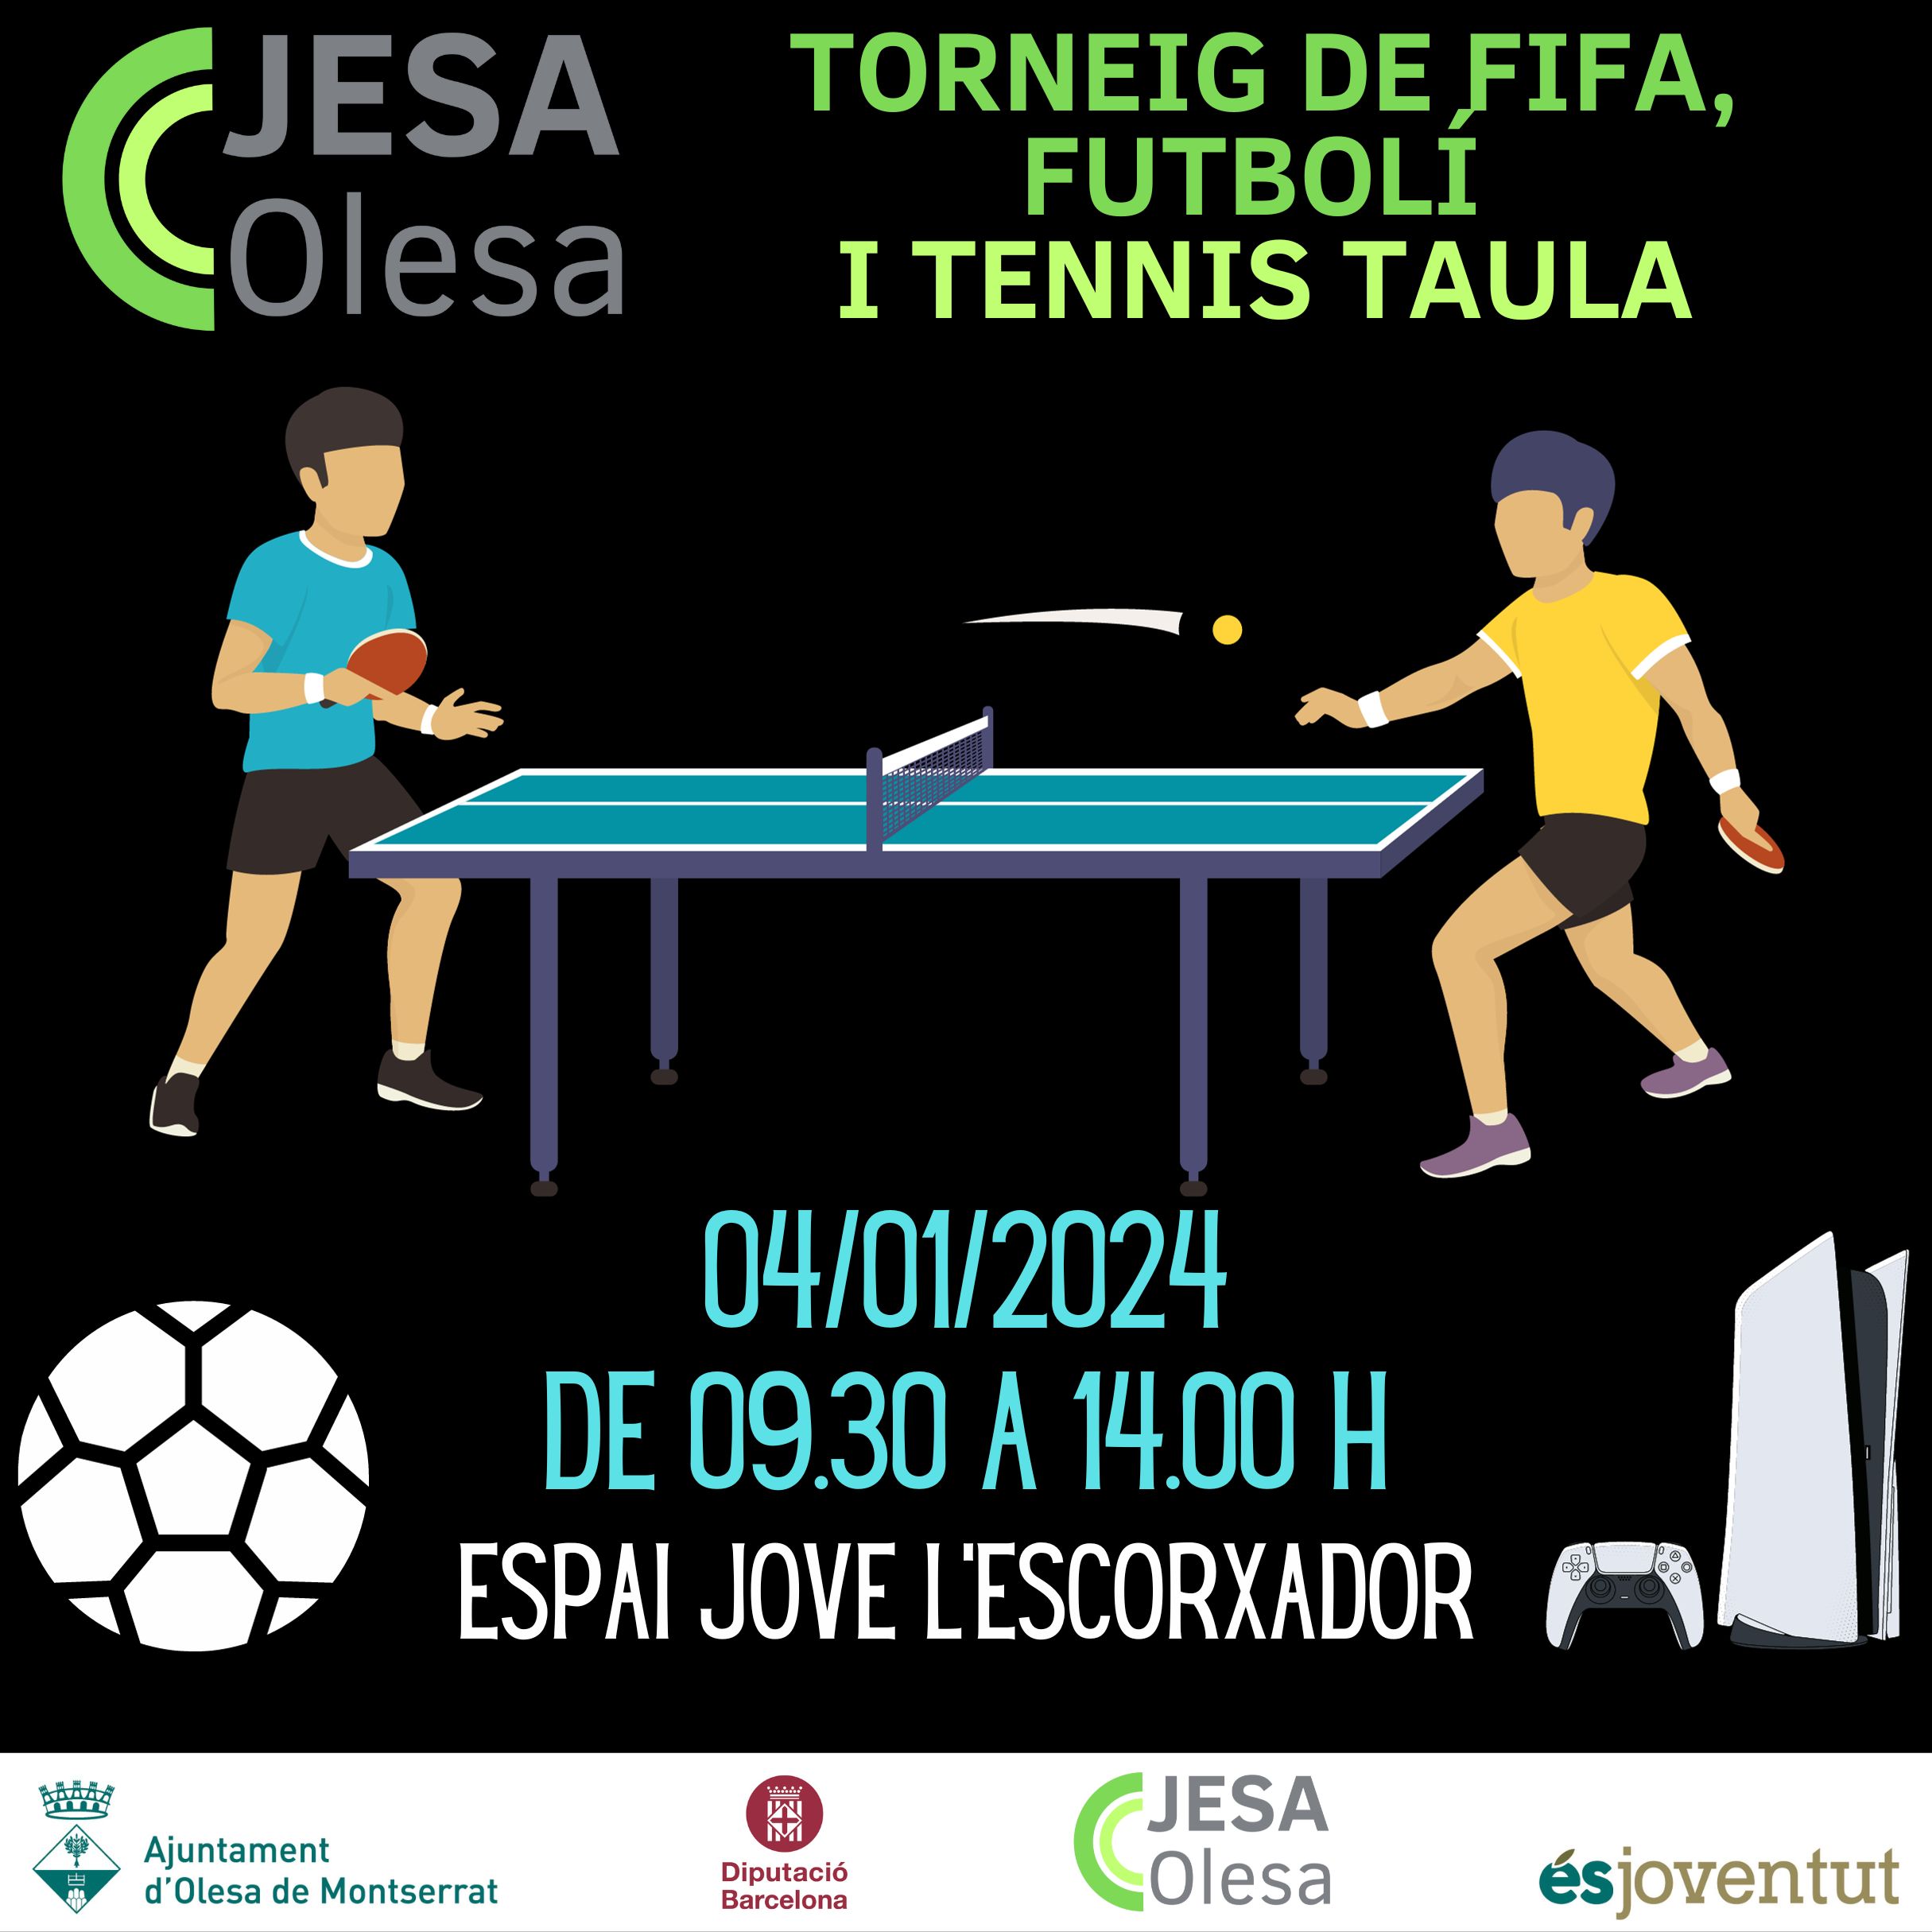 Cartell del Torneig FIFA, futbolí i tennis taula 2024 JESA